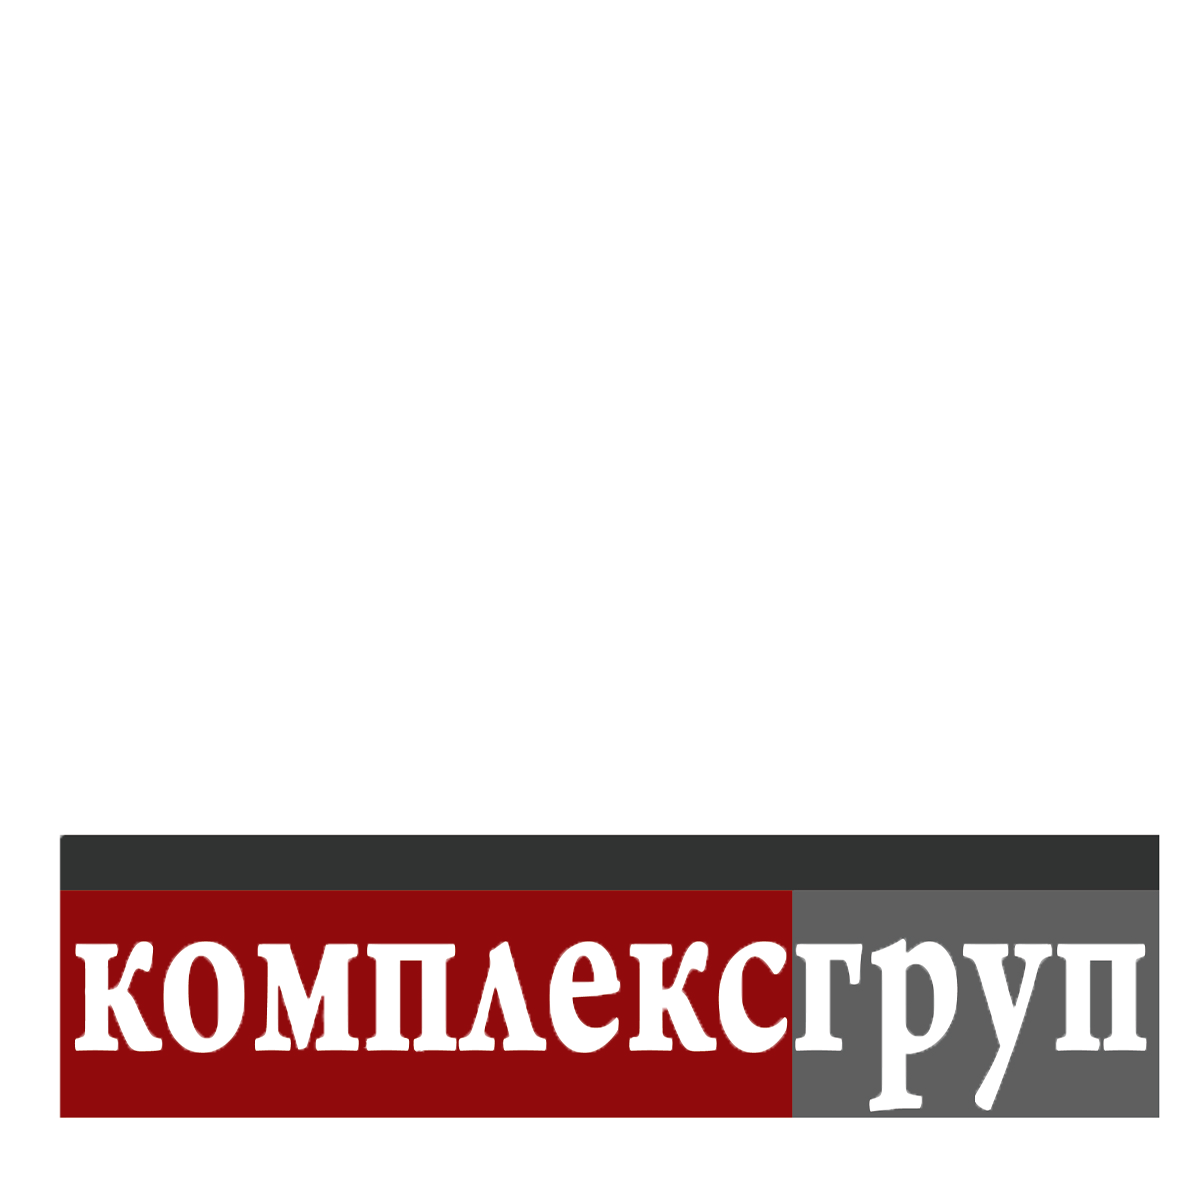 Vbk logo